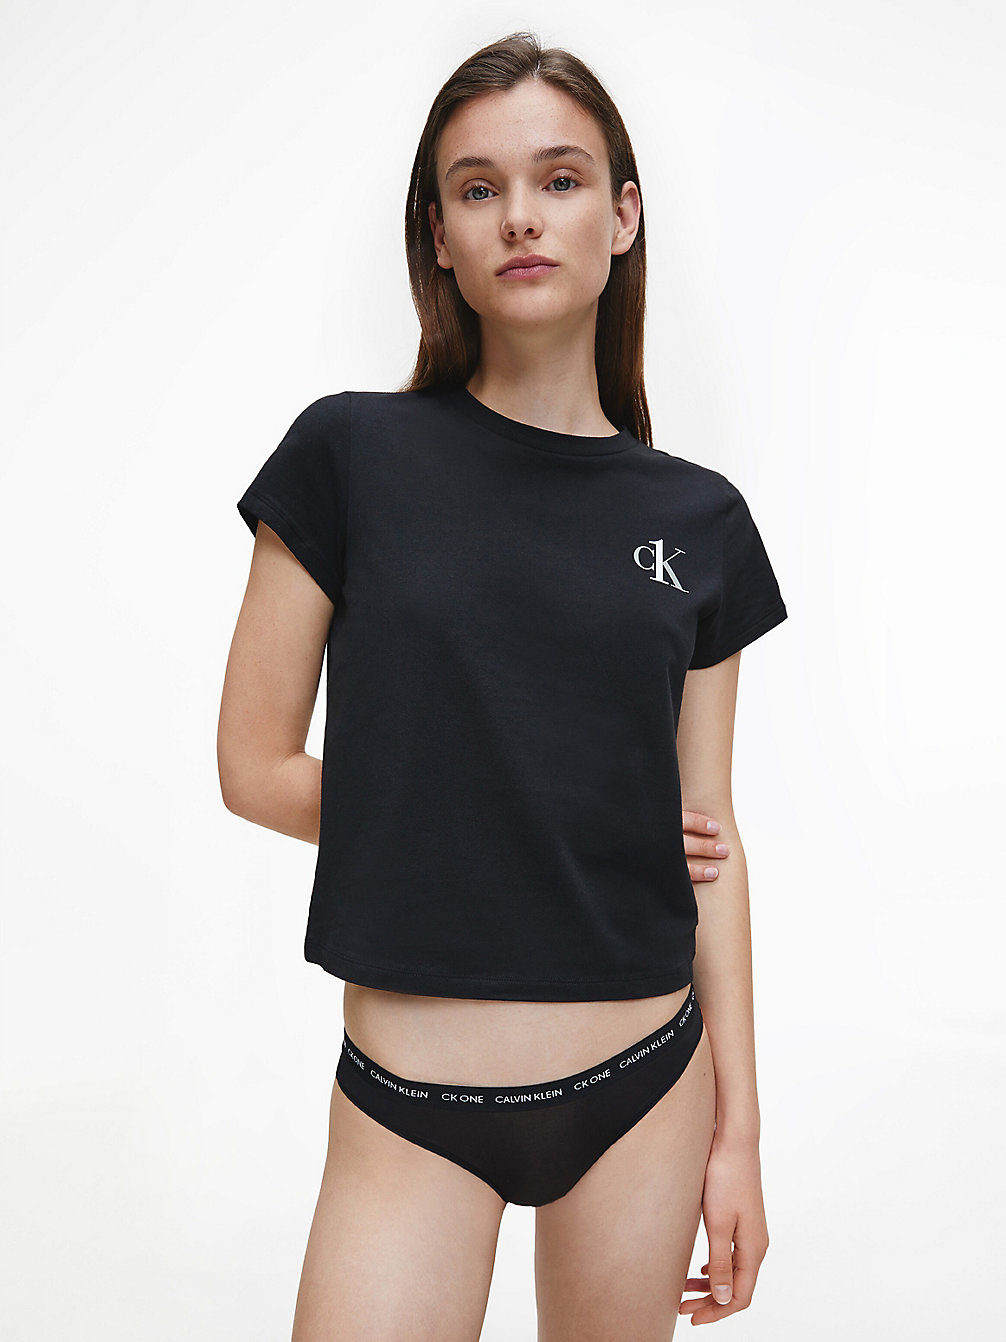 BLACK Lounge-T-Shirt – CK One undefined Damen Calvin Klein